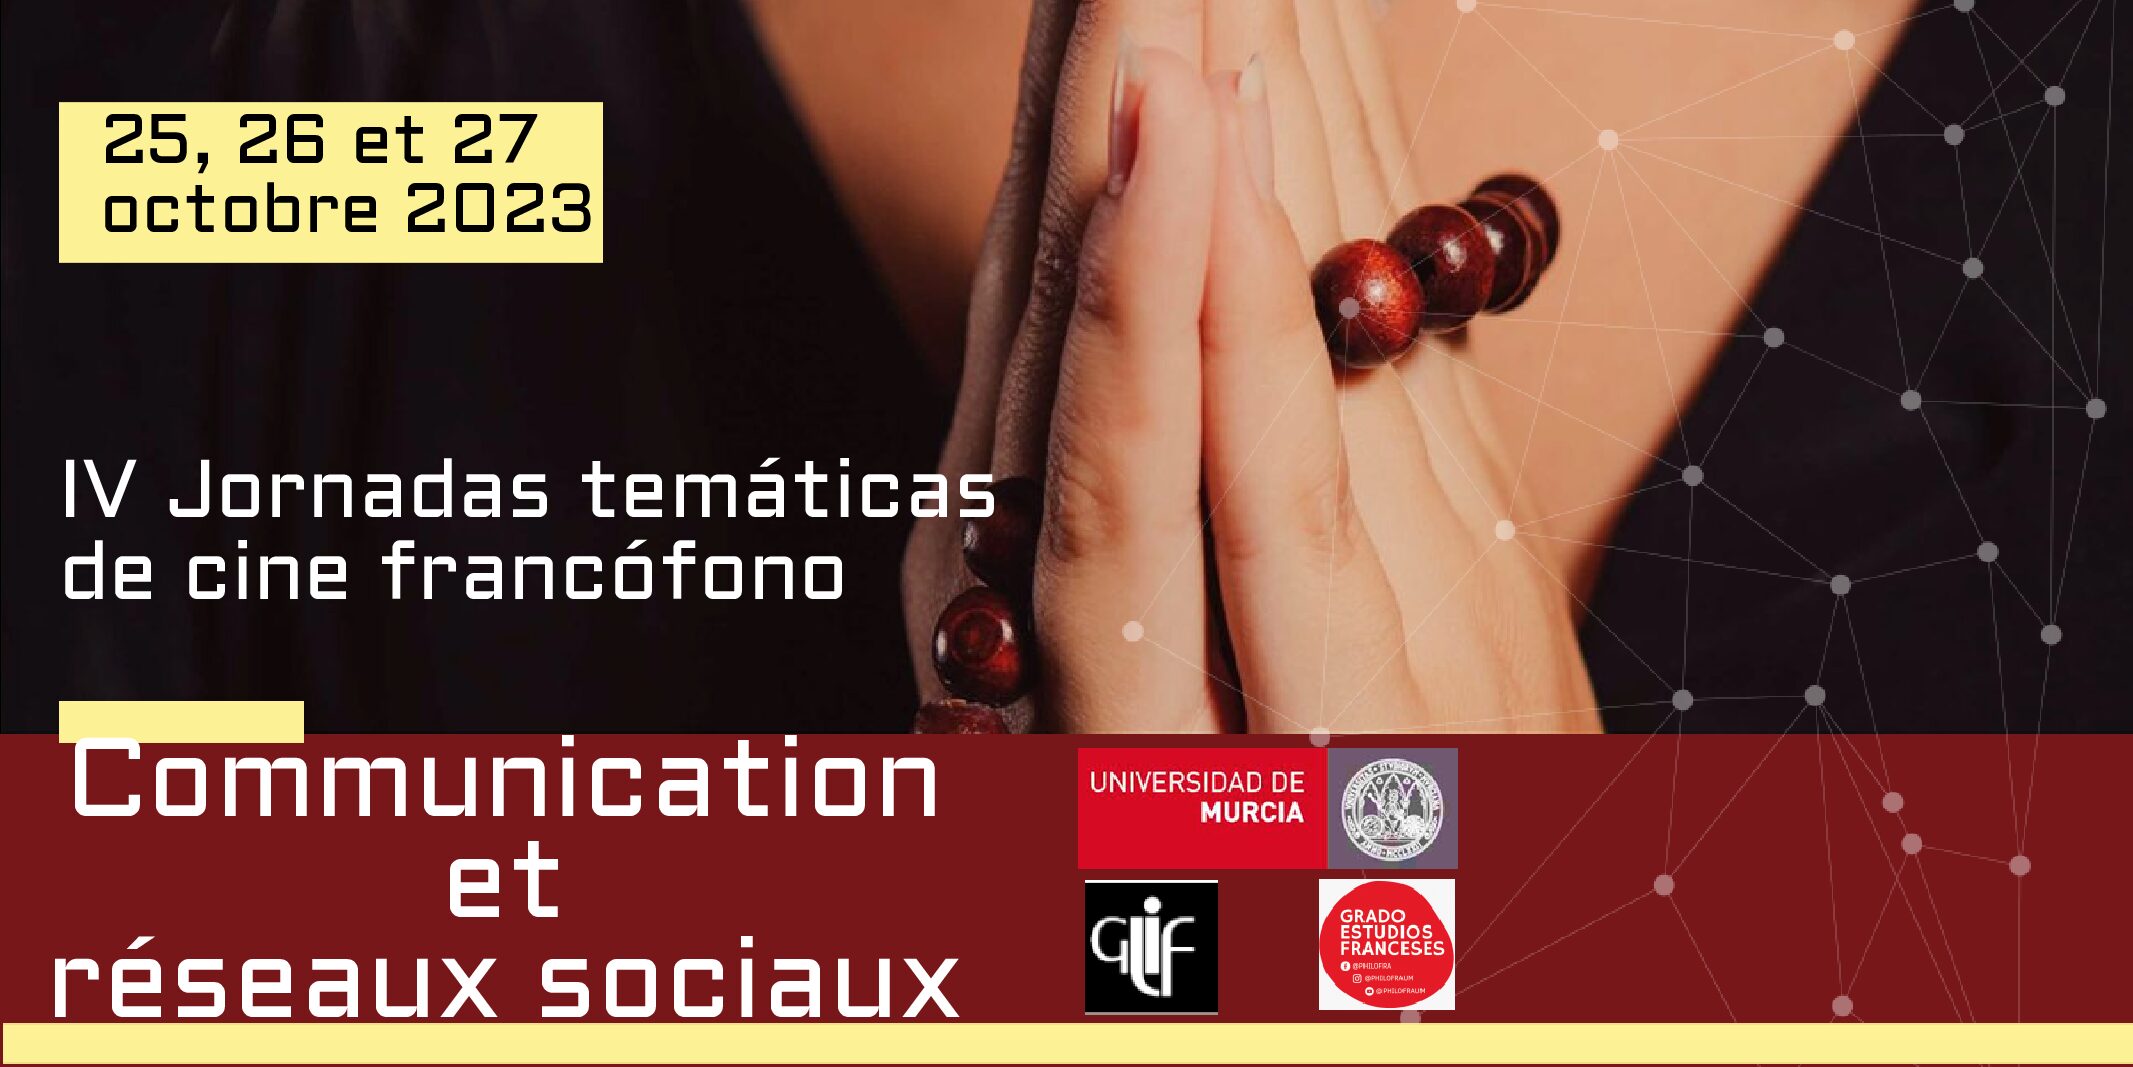 IV Jornadas Temáticas de Cine Francófono                            25, 26 y 27 octubre 2023                                                                           Universidad de Murcia